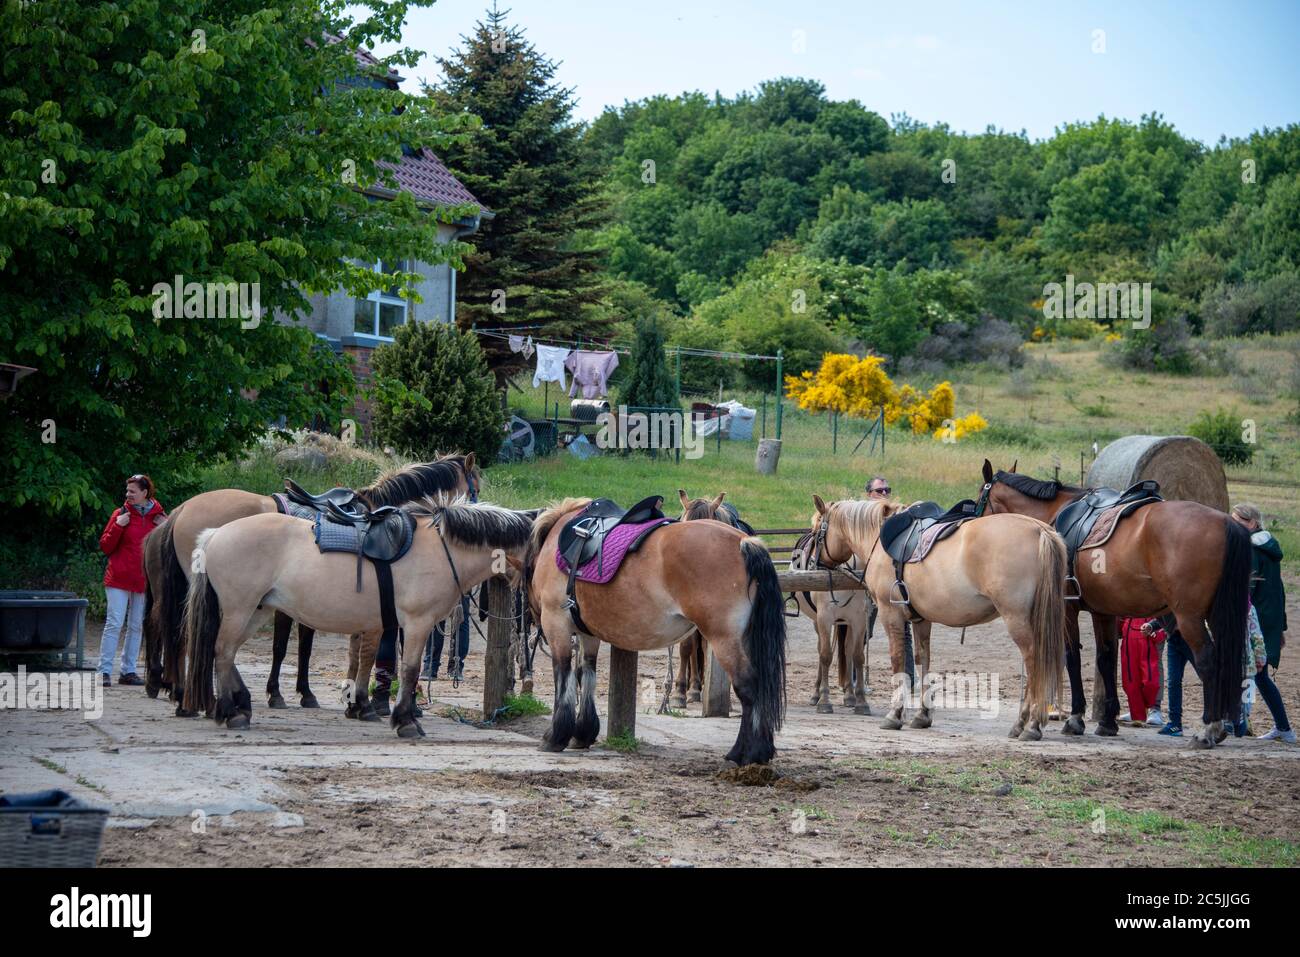 Hiddensee, Deutschland. Juni 2020. Pferde stehen in einem Kloster nebeneinander. Von hier aus reisen Urlauber in Kutschen über die Insel. Quelle: Stephan Schulz/dpa-Zentralbild/ZB/dpa/Alamy Live News Stockfoto